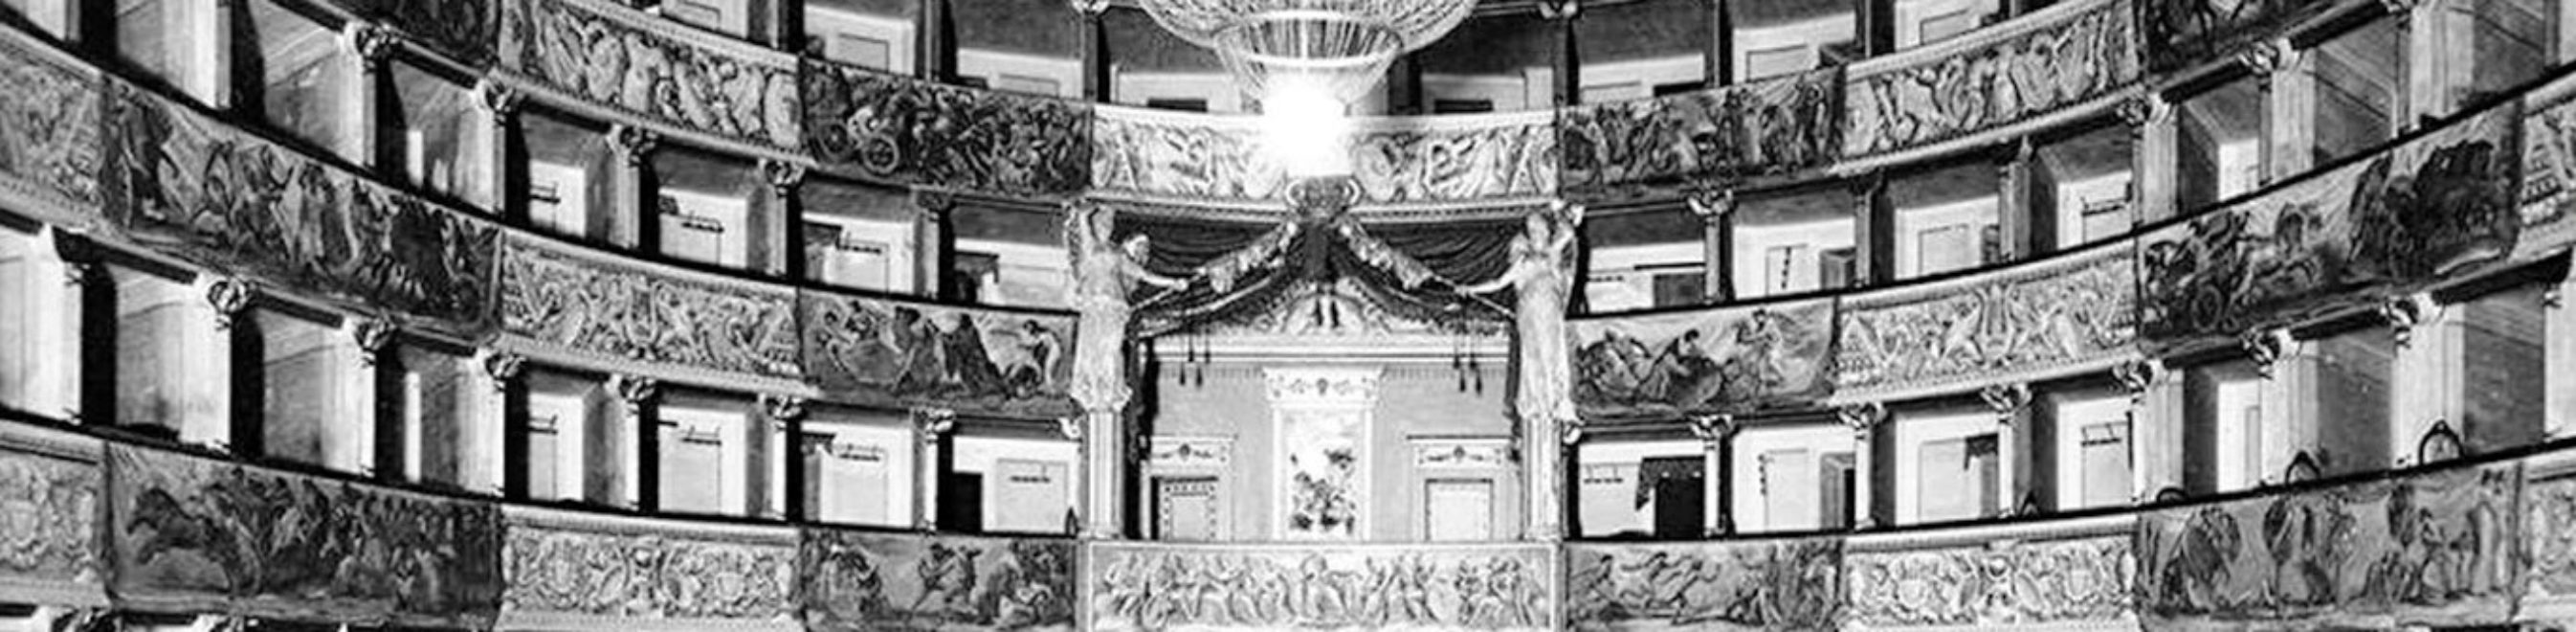 “Il patronato teatrale città di Livorno 1902-1905”